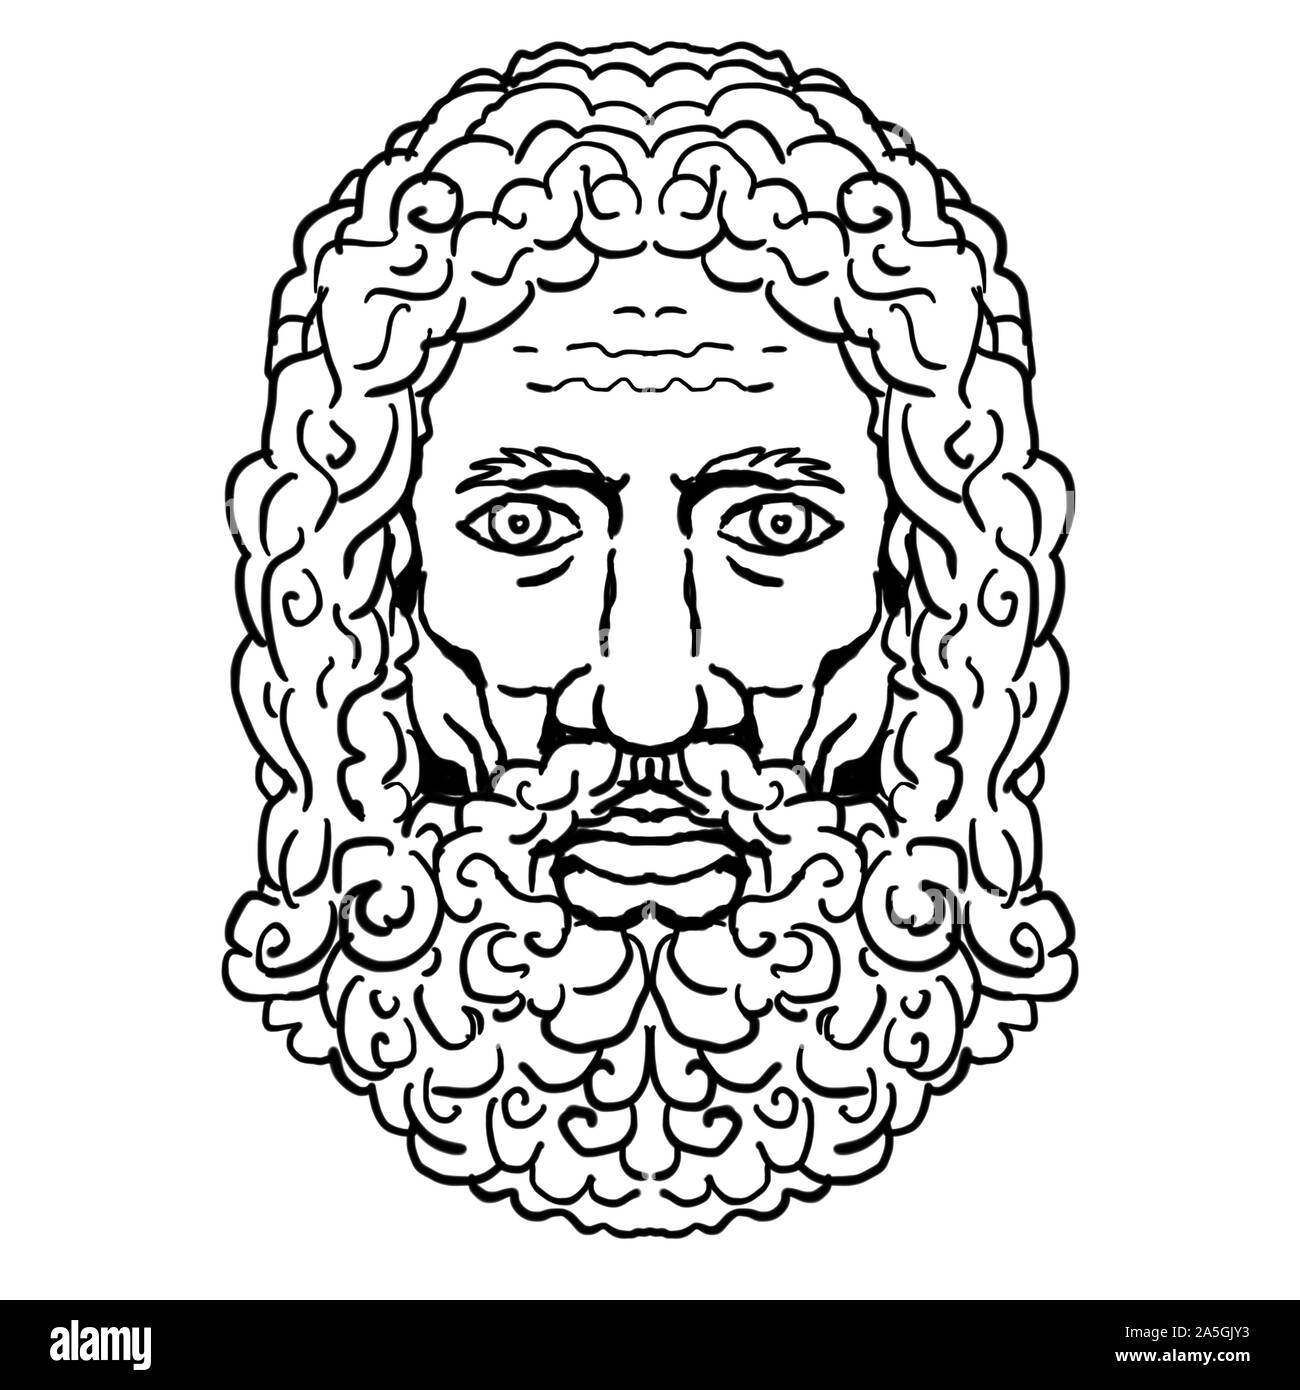 Rétro in stile cartoon ritratto disegno della testa di Zeus, un dio greco nella mitologia viste dalla parte anteriore sulla isolato sfondo bianco fatto in bianco e nero Foto Stock